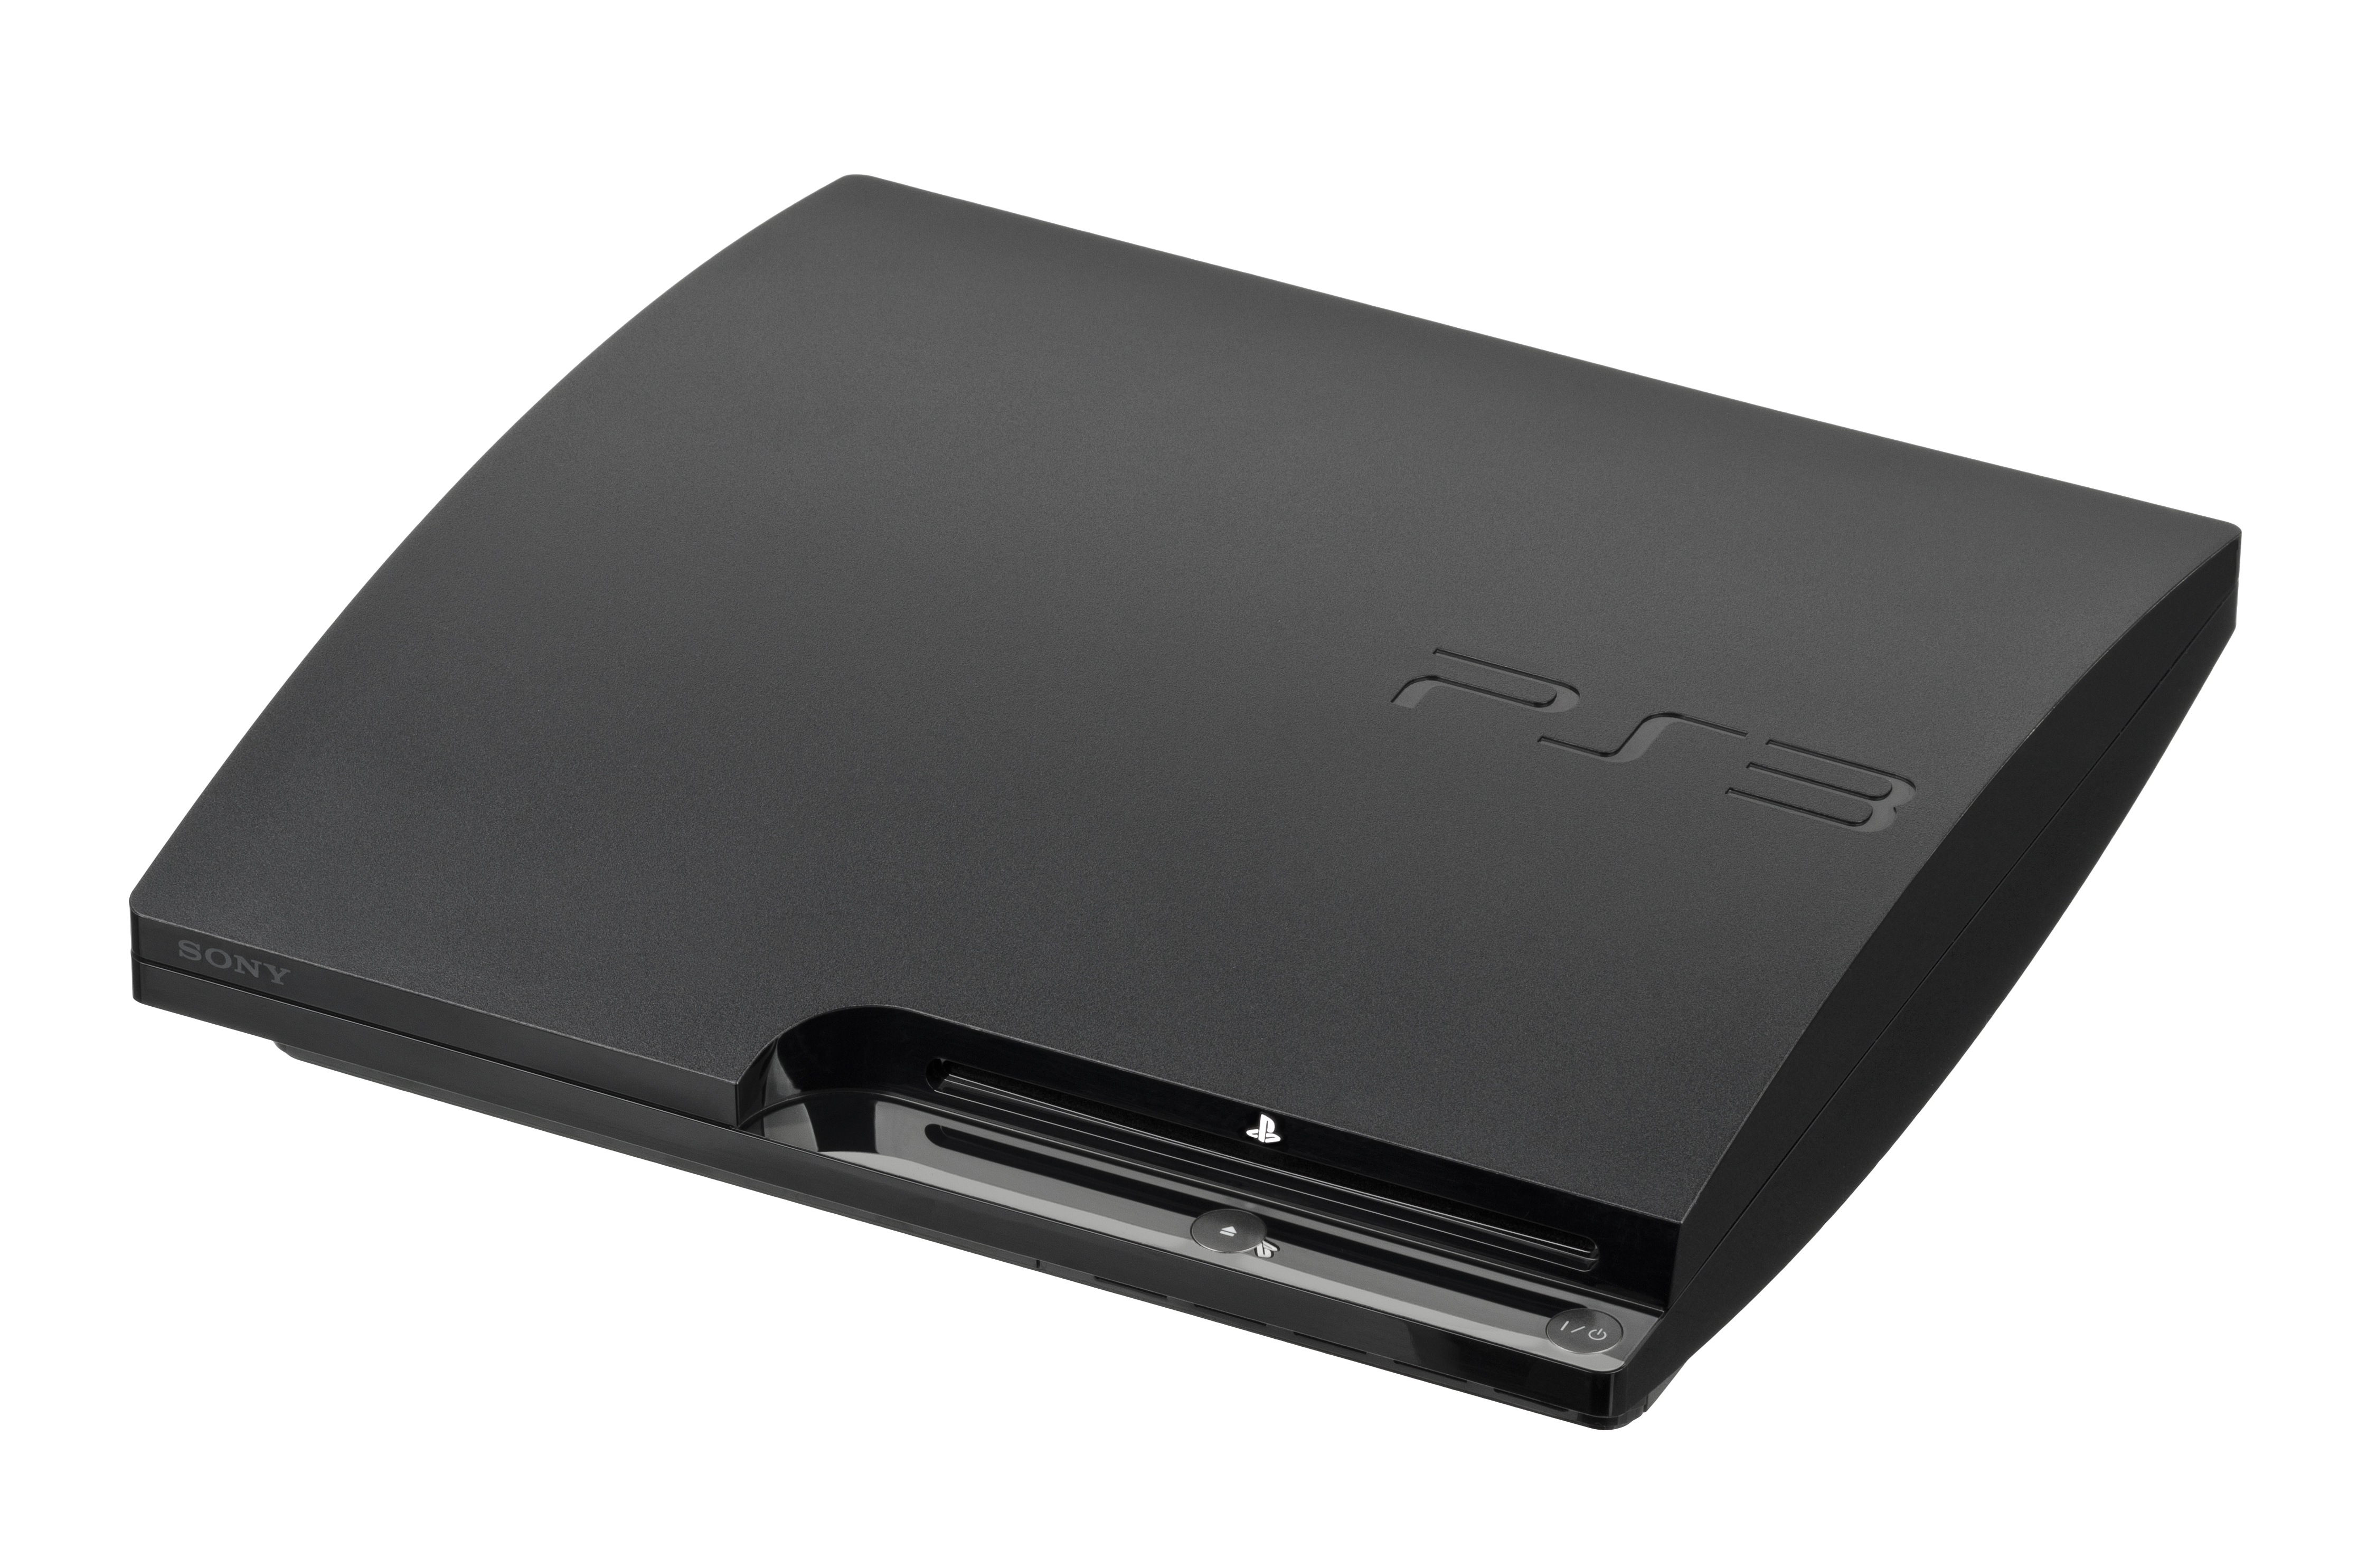 Playstation 3 slim repair | Ps3 Slim Repair
